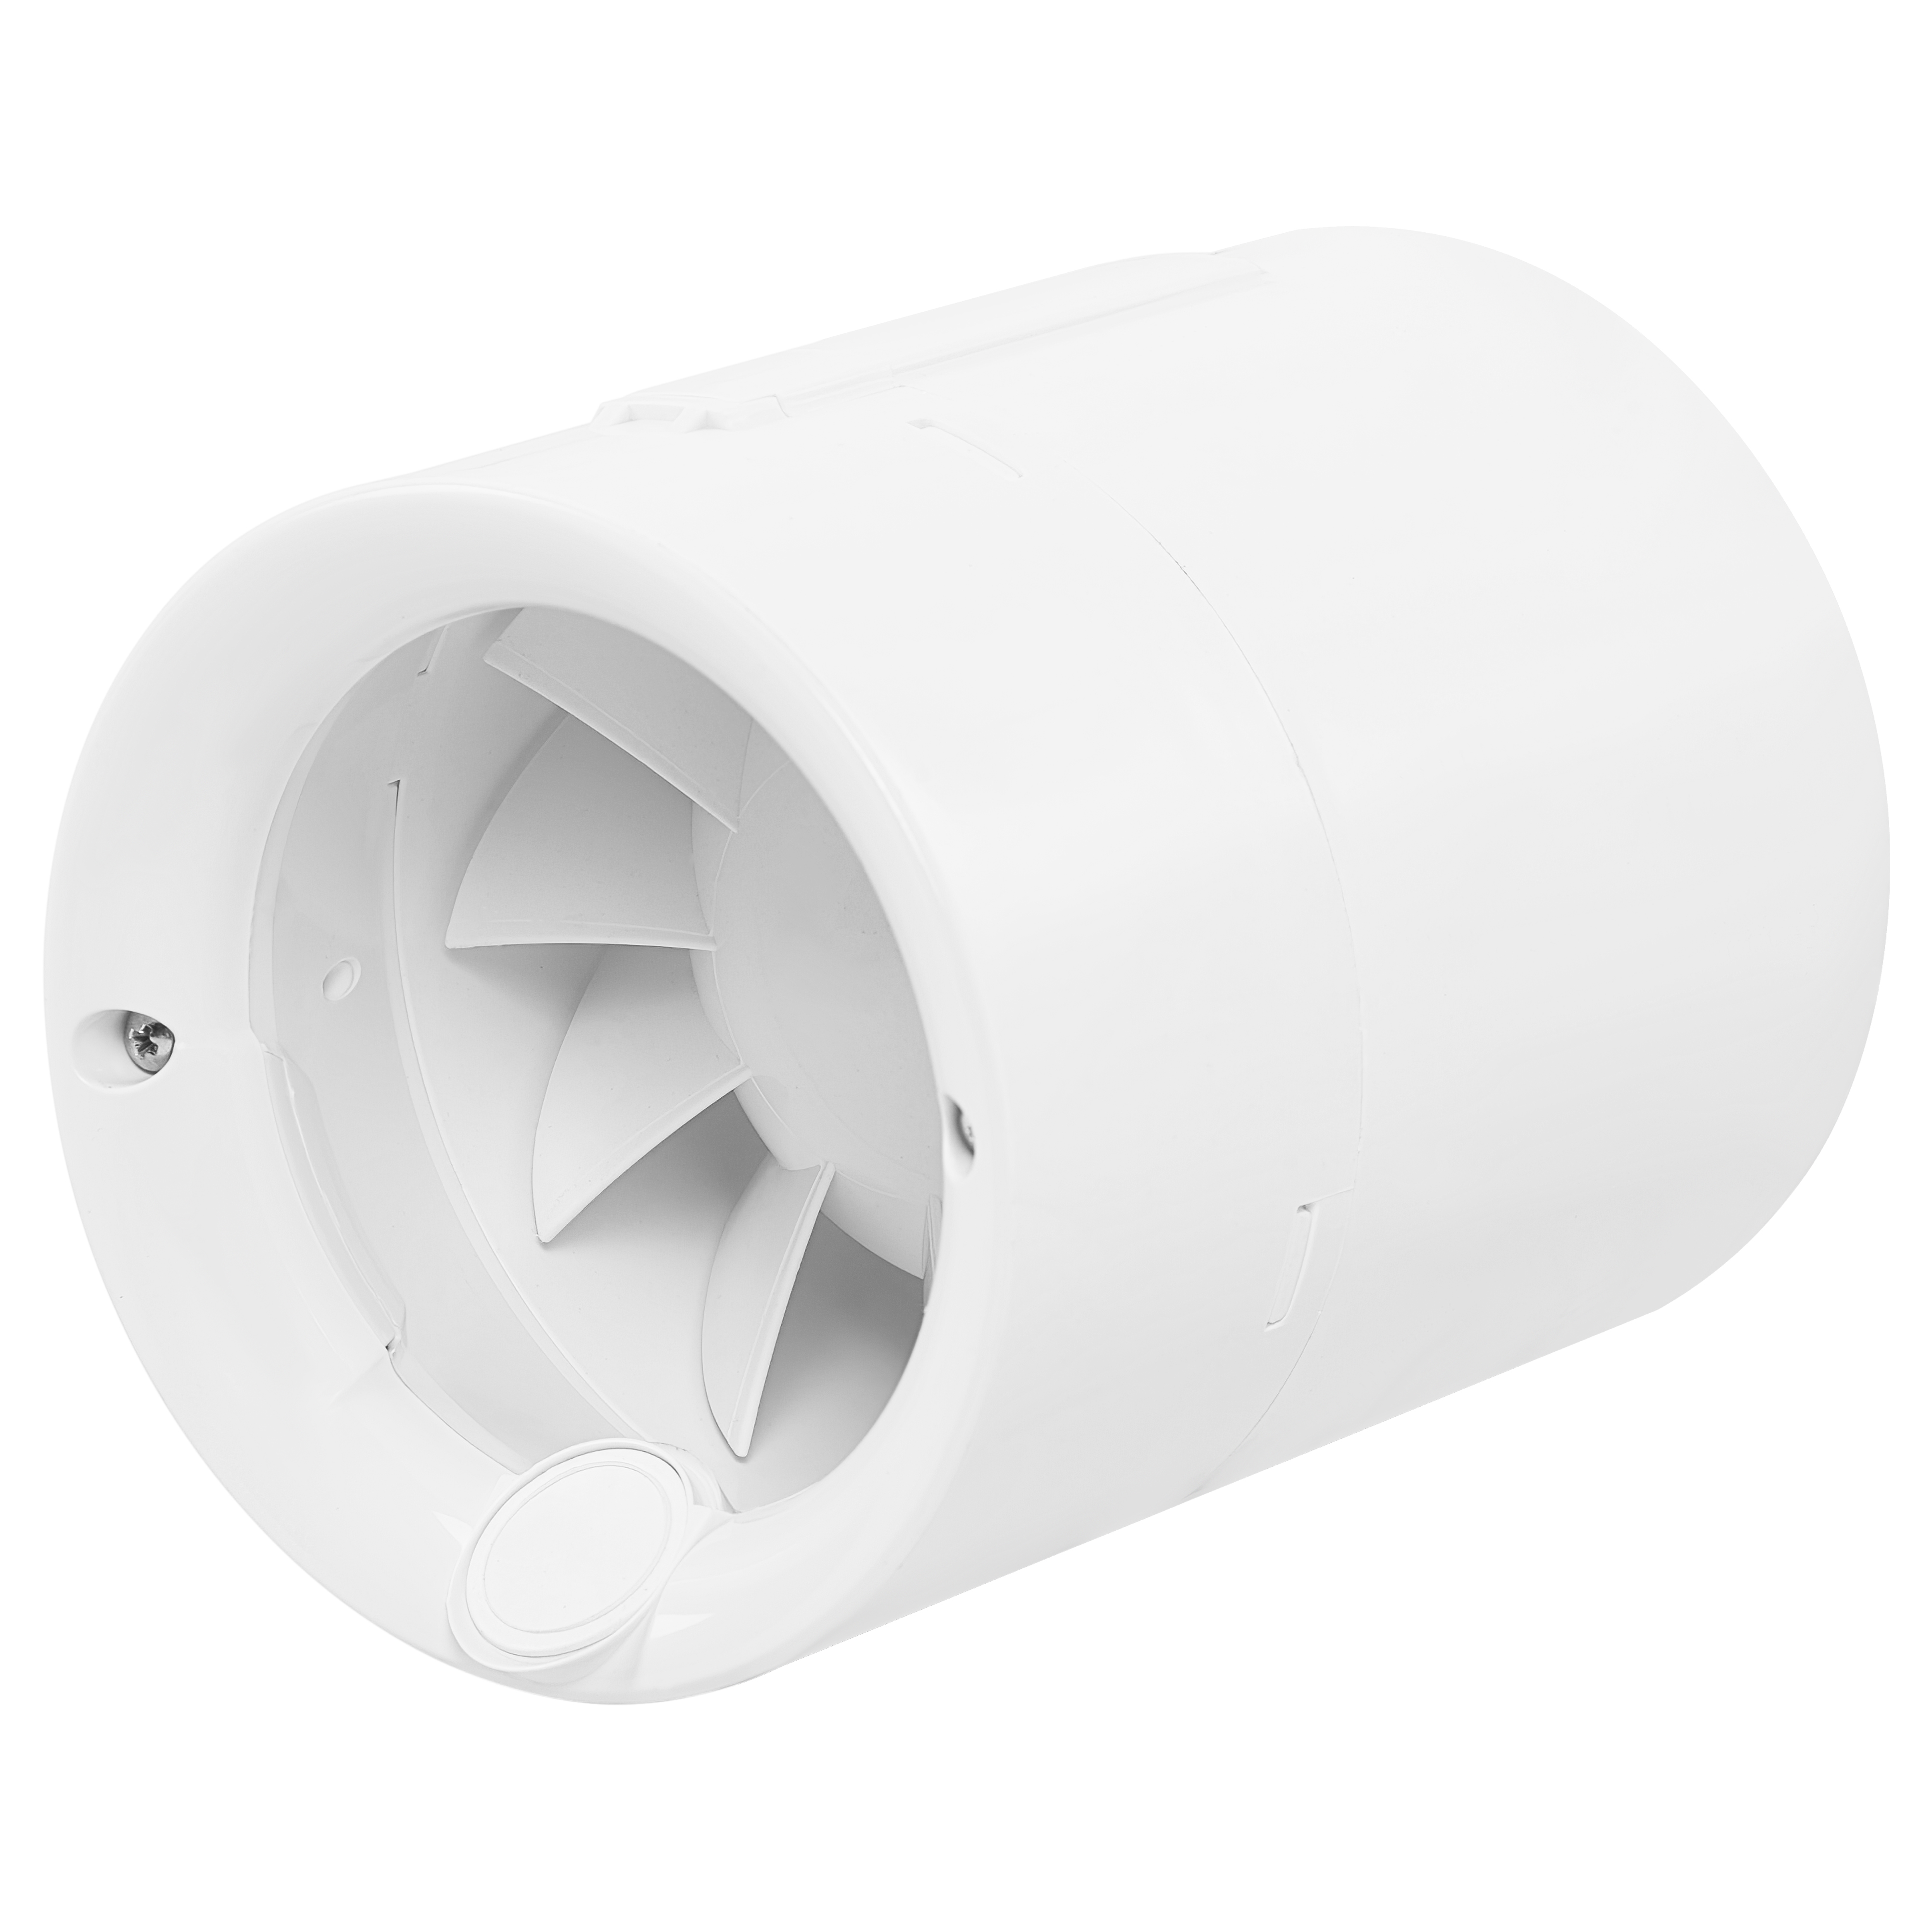 Характеристики канальный вентилятор для круглых каналов Soler&Palau Silentub-100